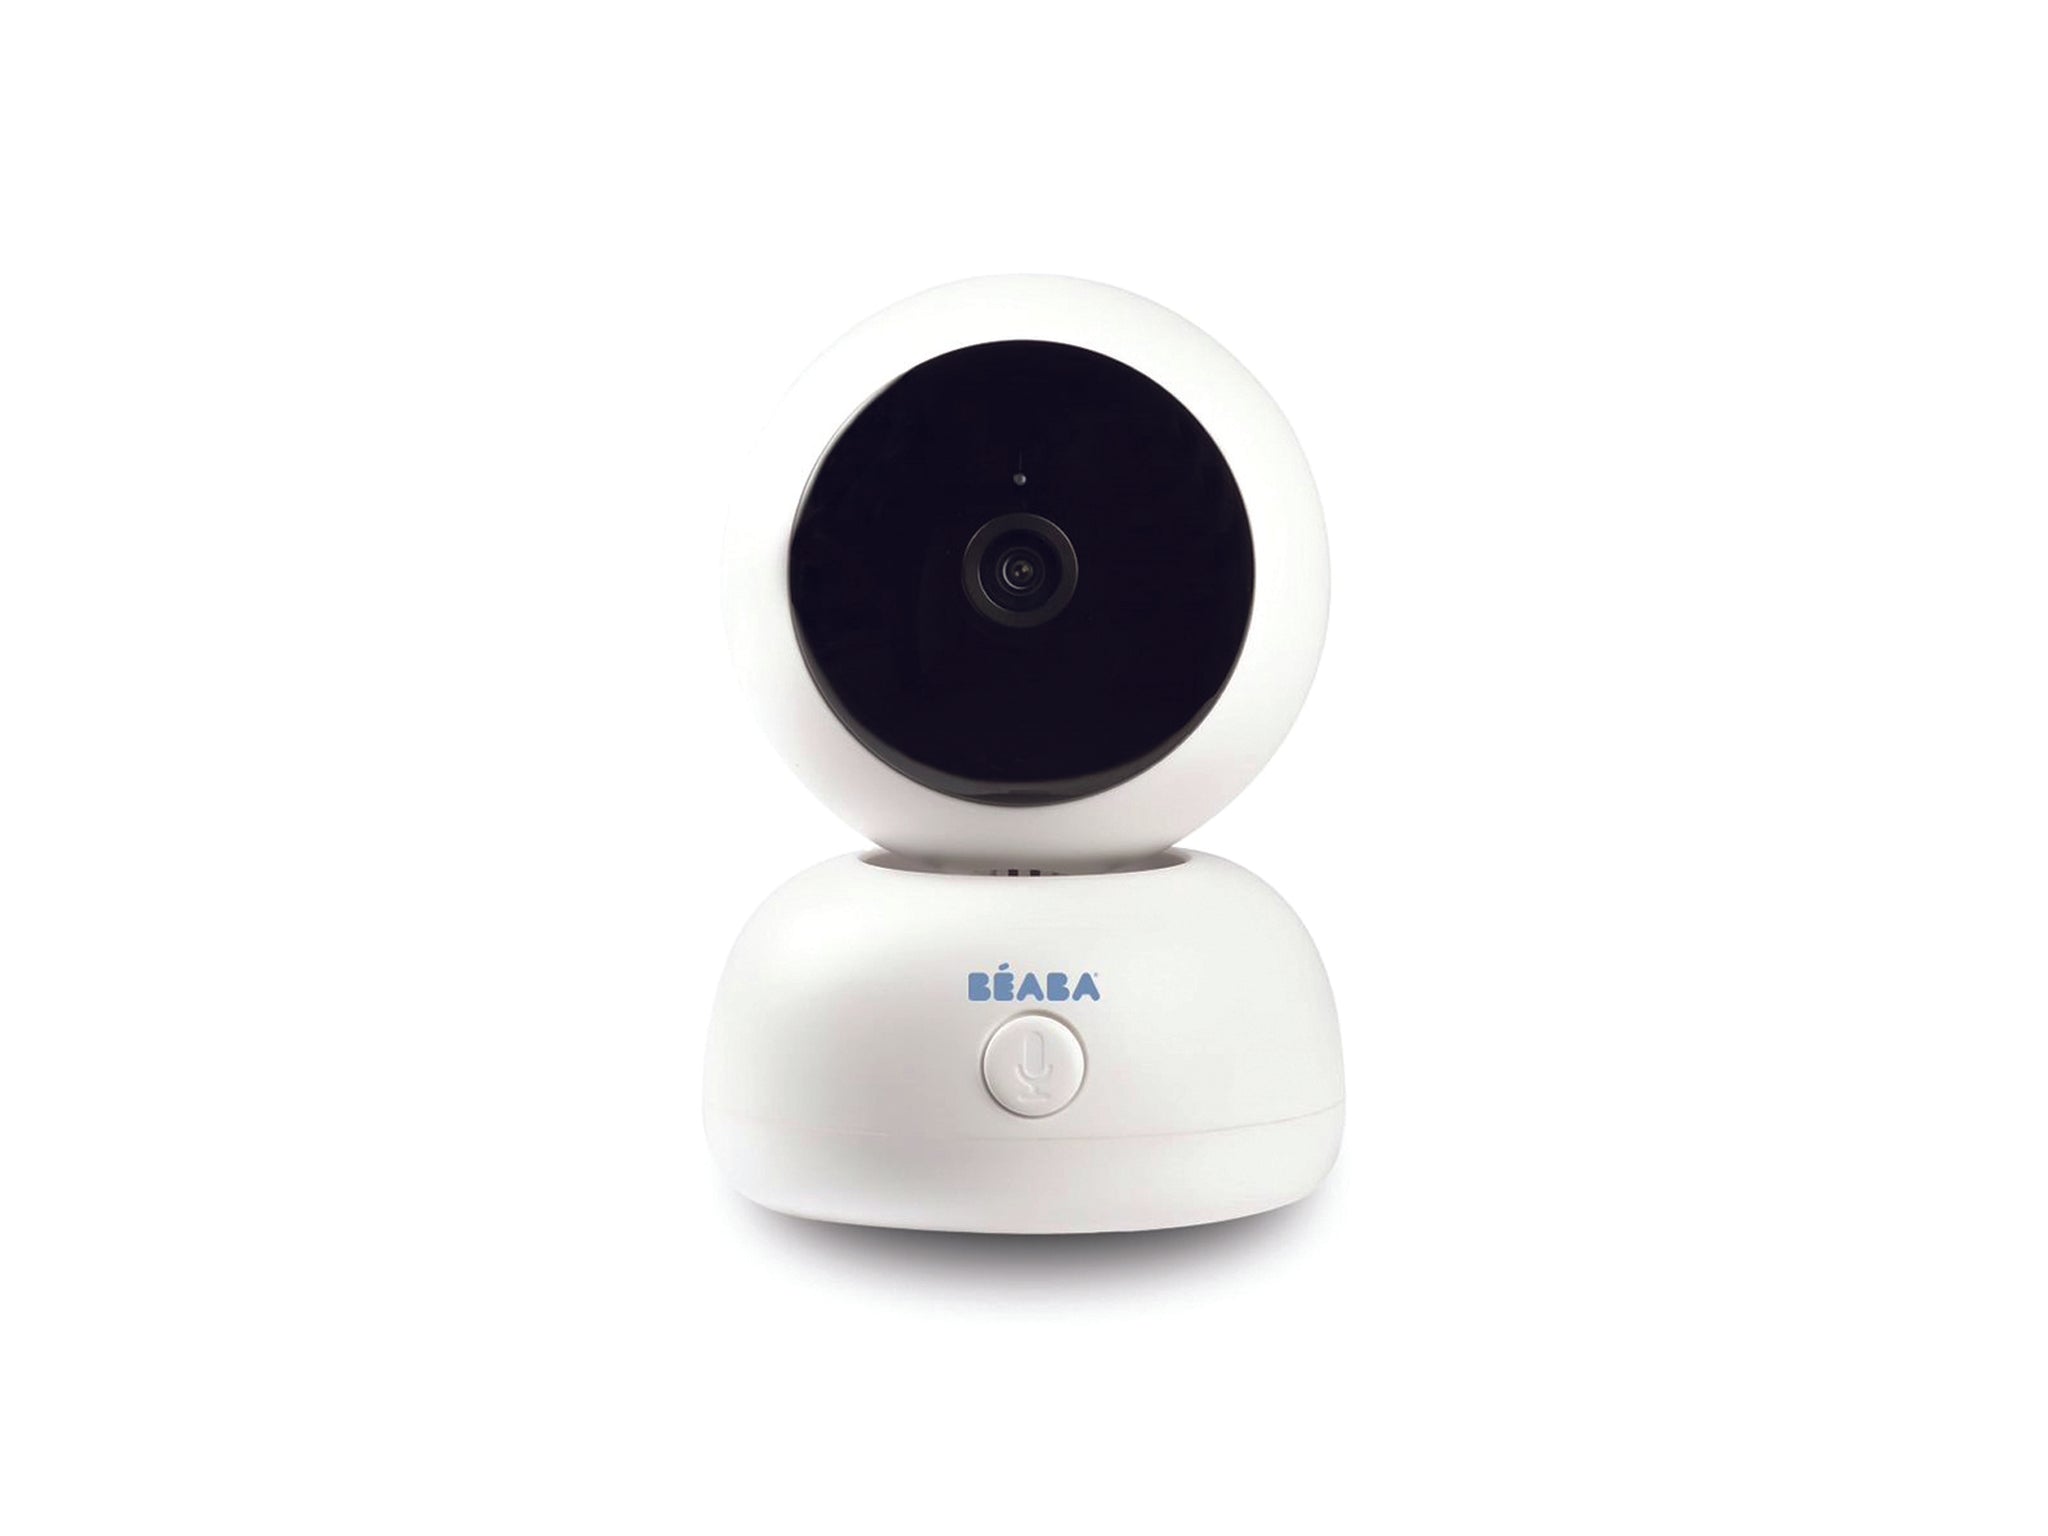 Zen Premium Baby Monitor with Camera white